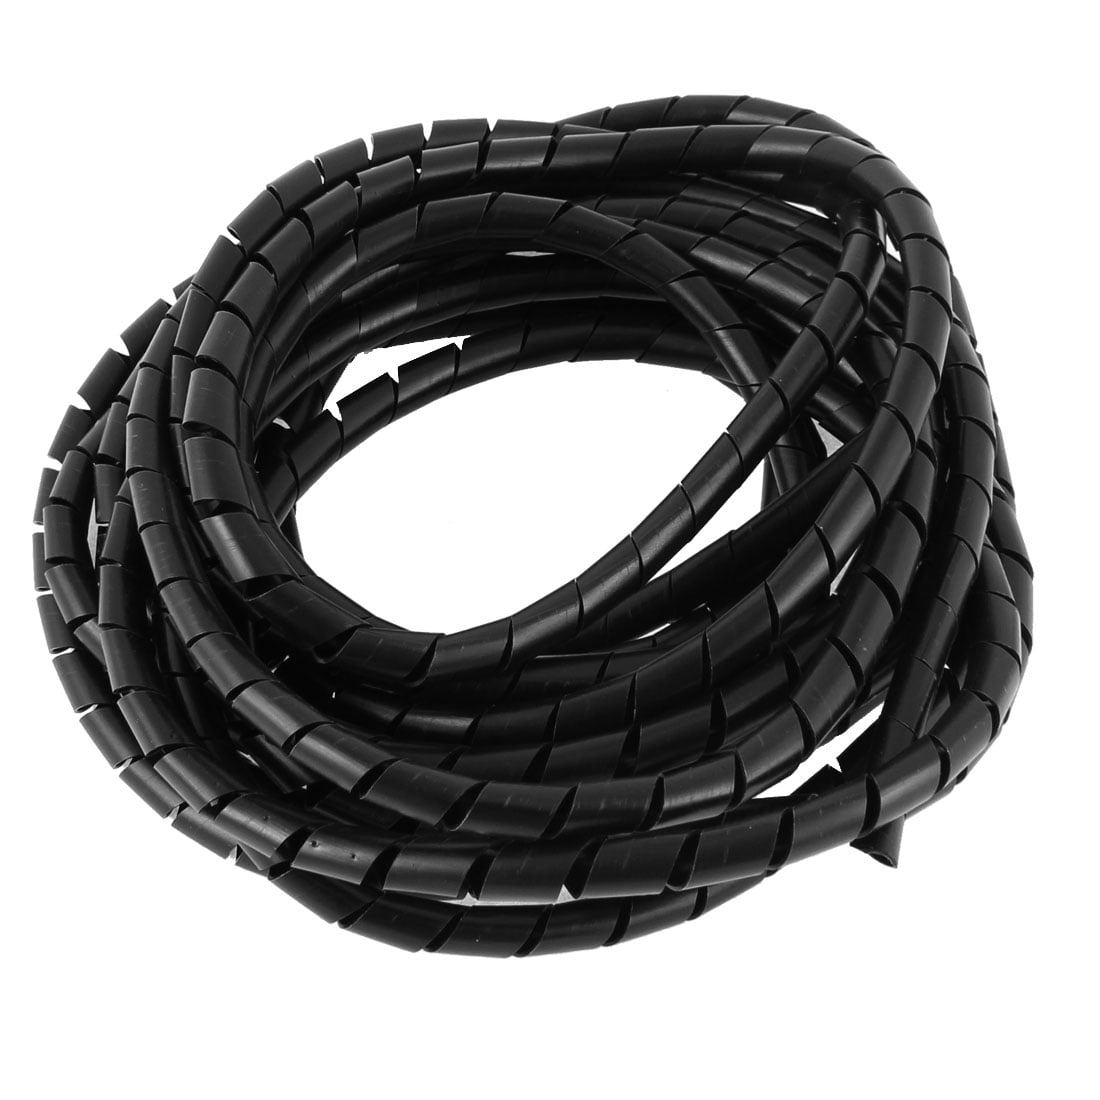 7m x 12mm Flexible PE Polyethylene Spiral Cable Wire Wrap Tube Black 2pcs 190459754705